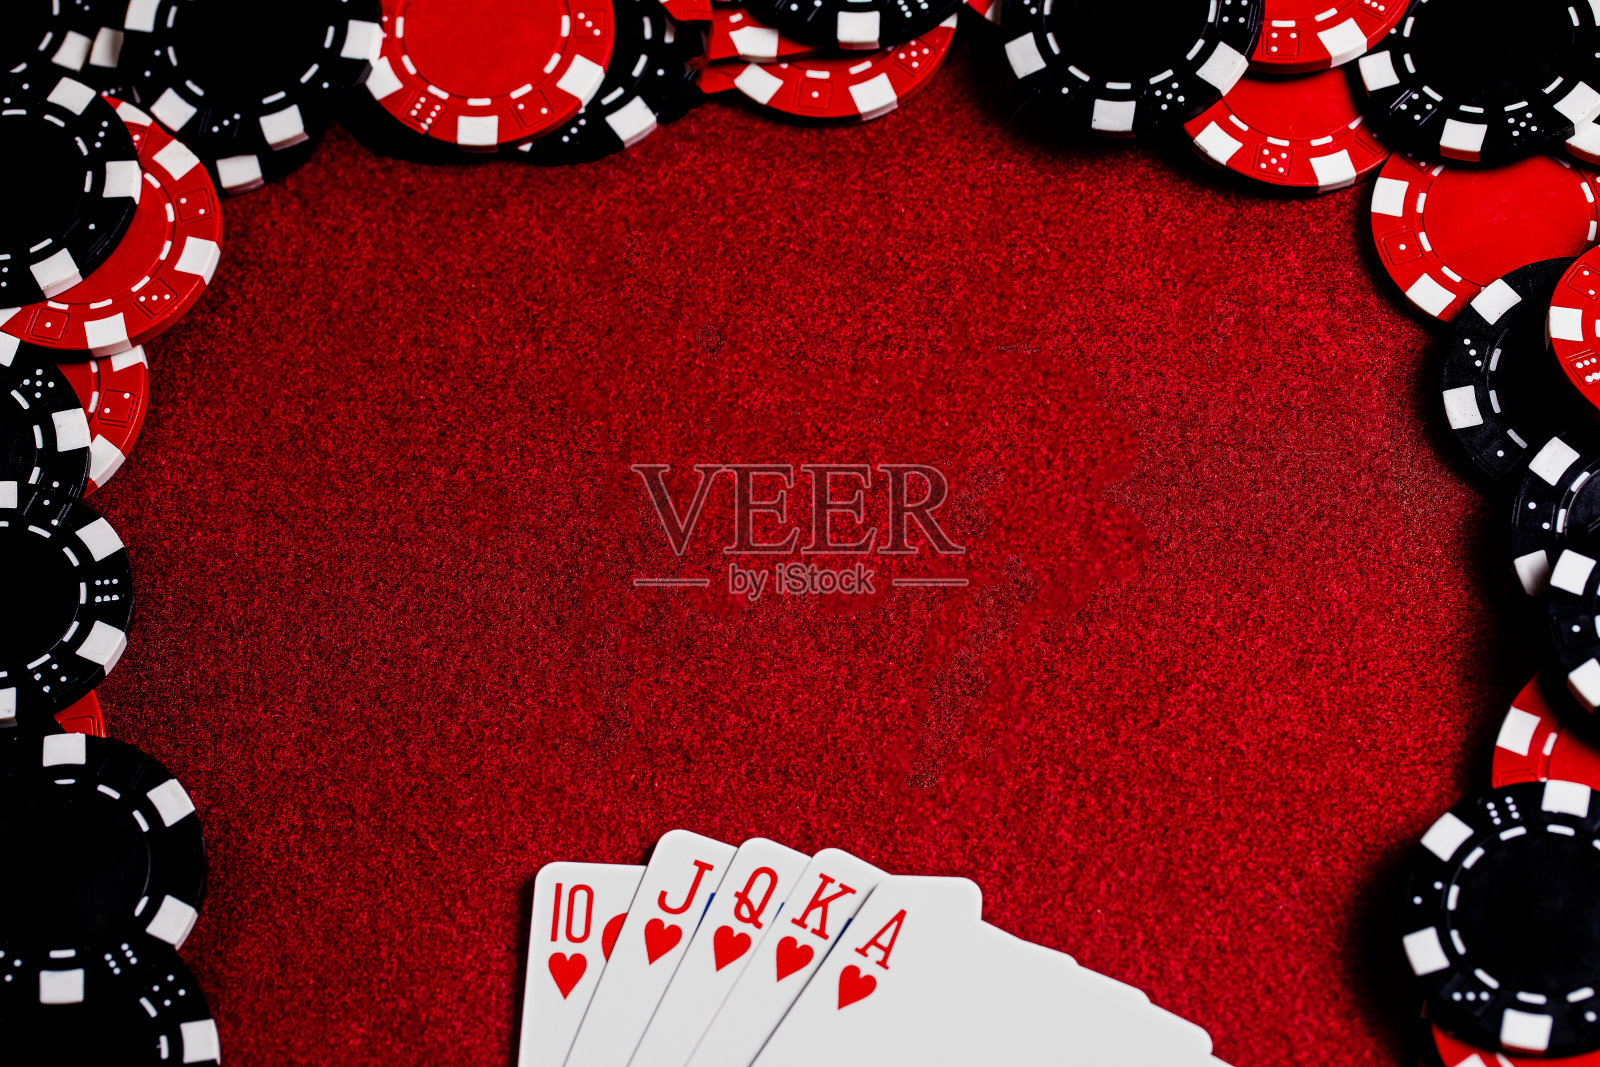 一个皇家红心同心圆扇形在框架的底部，和一个大空间的复制在深红色毛毡桌子表面的中心被红色和黑色粘土扑克筹码包围。高对比度和拍摄副本。照片摄影图片